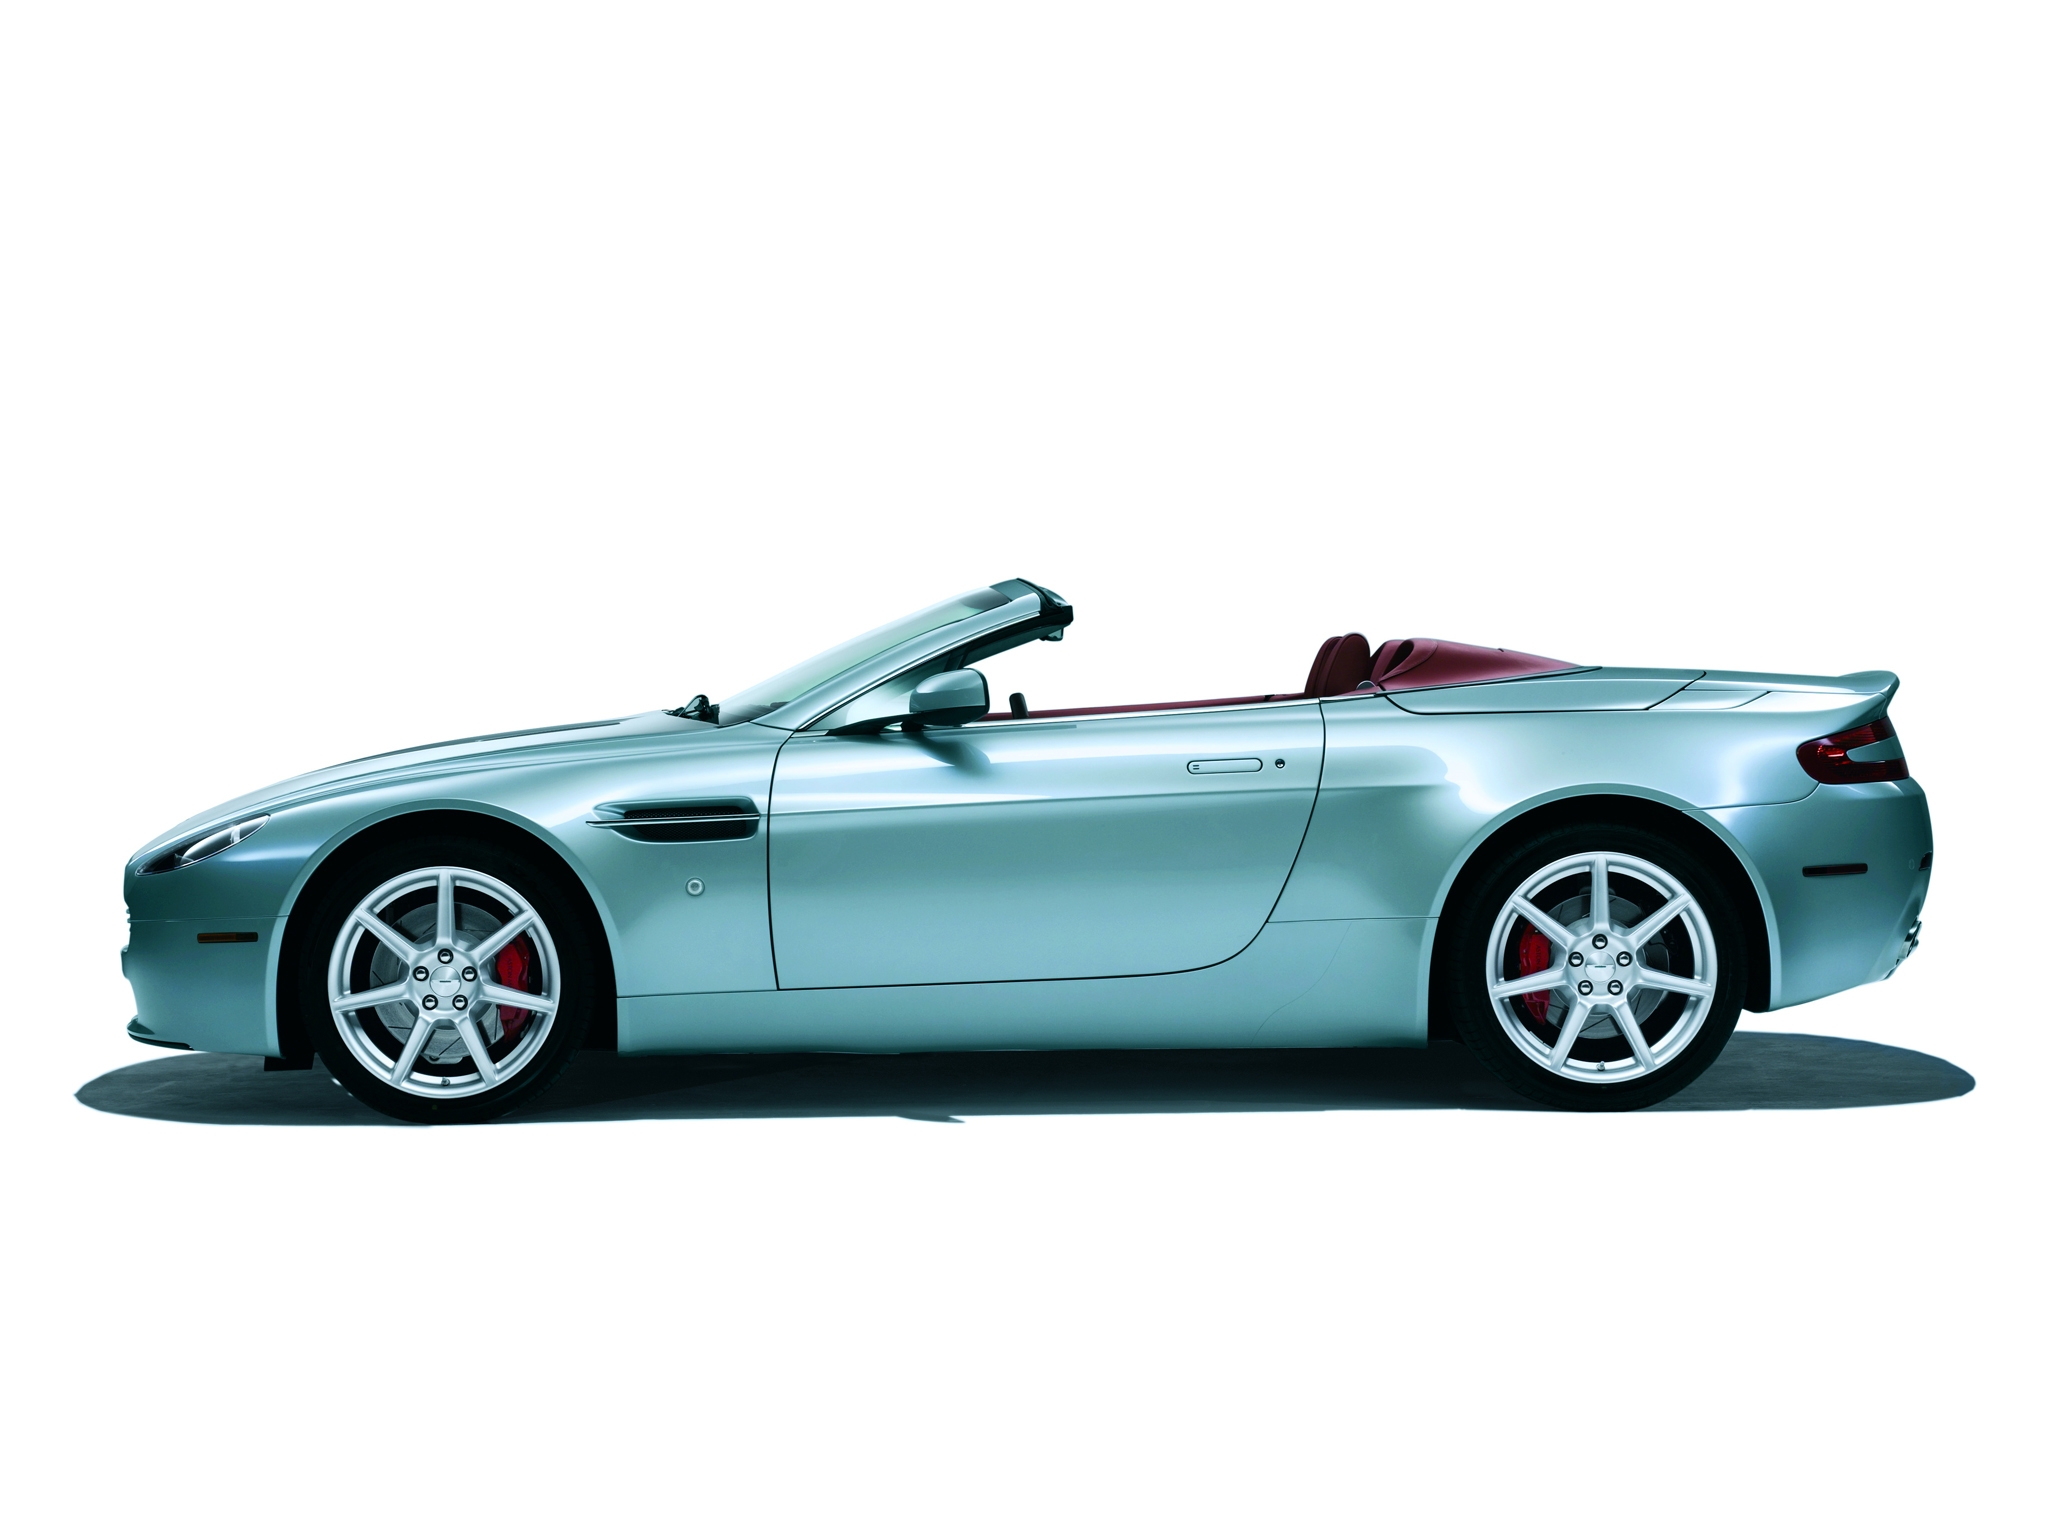 Скачать обои бесплатно Vantage, V8, 2006, Тачки (Cars), Вид Сбоку, Кабриолет, Астон Мартин (Aston Martin), Зеленый, Машины картинка на рабочий стол ПК